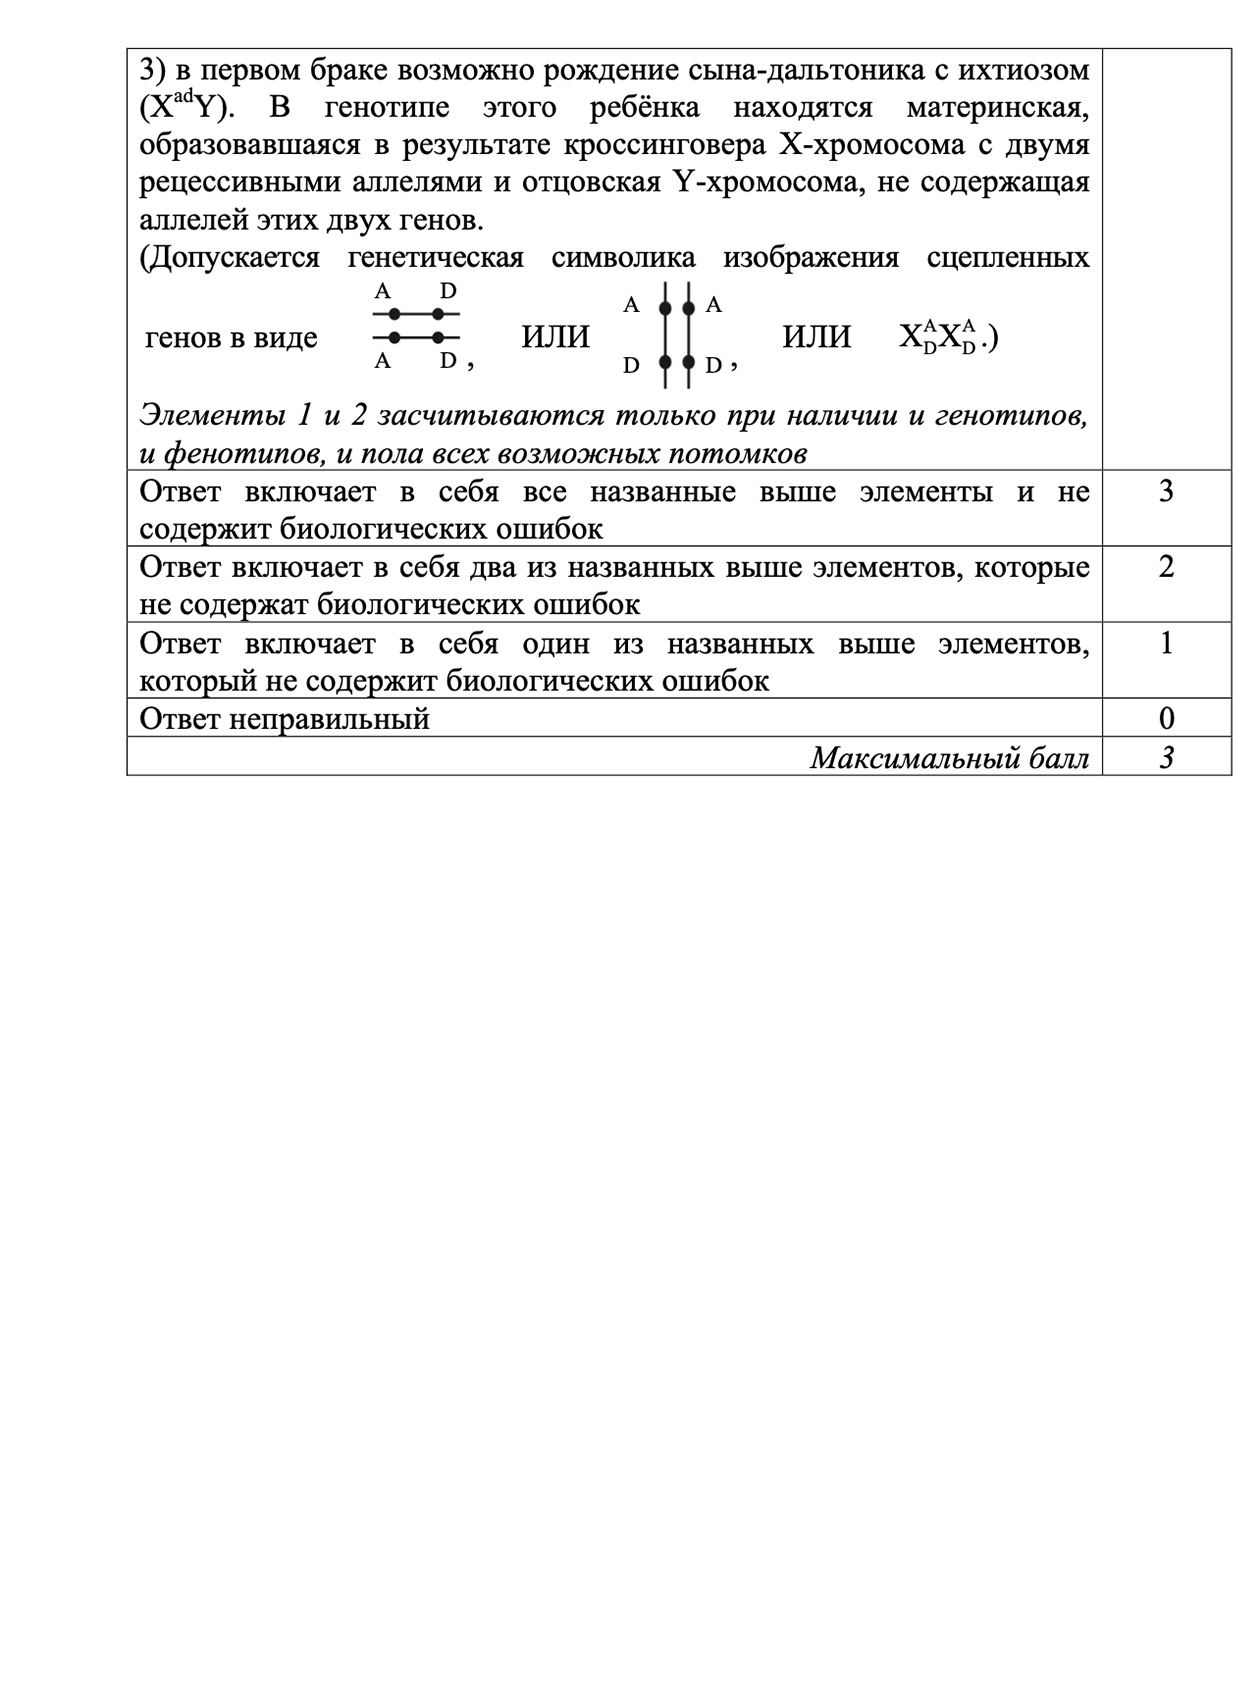 Последнее задание в экзамене с критериями оценивания. Источник: fipi.ru